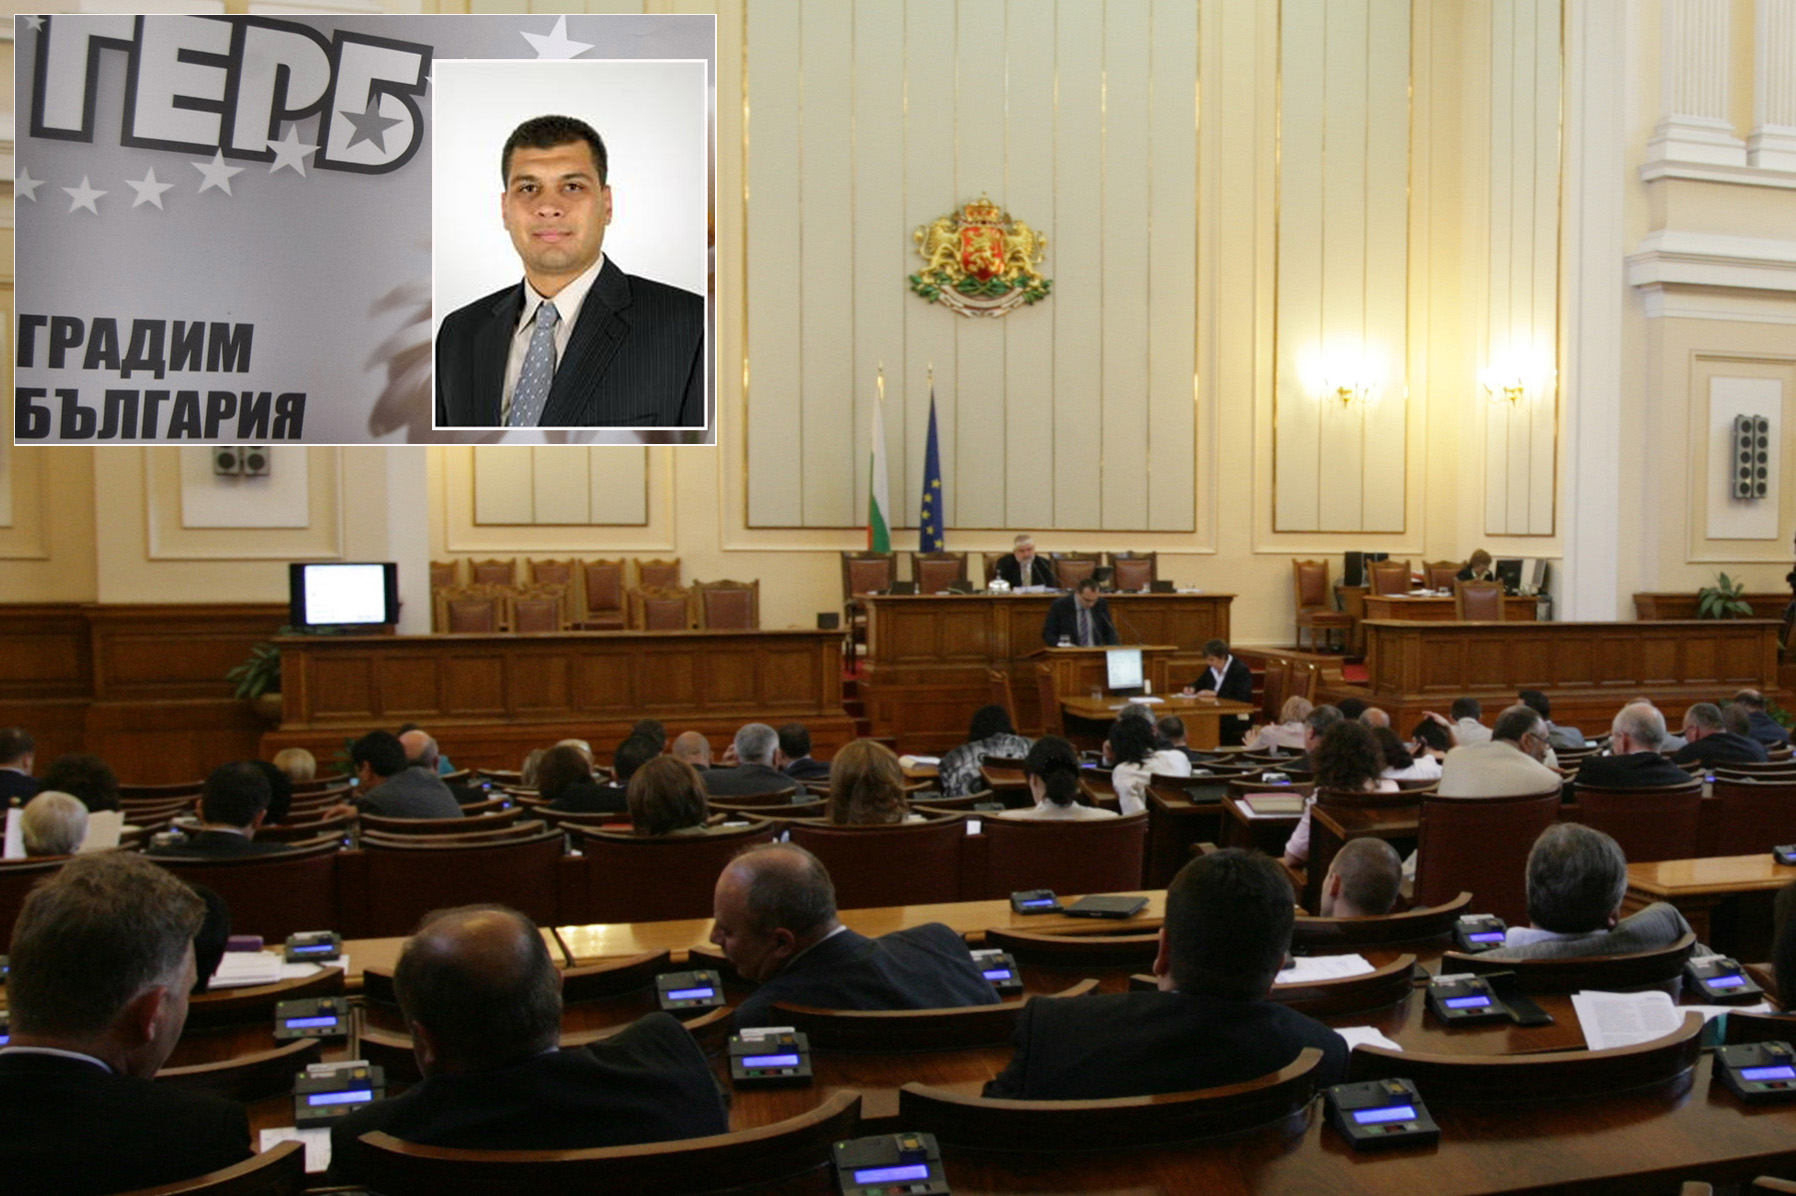 Депутатите отделиха цял пленарен ден за обсъждания по 6-те законопроекта